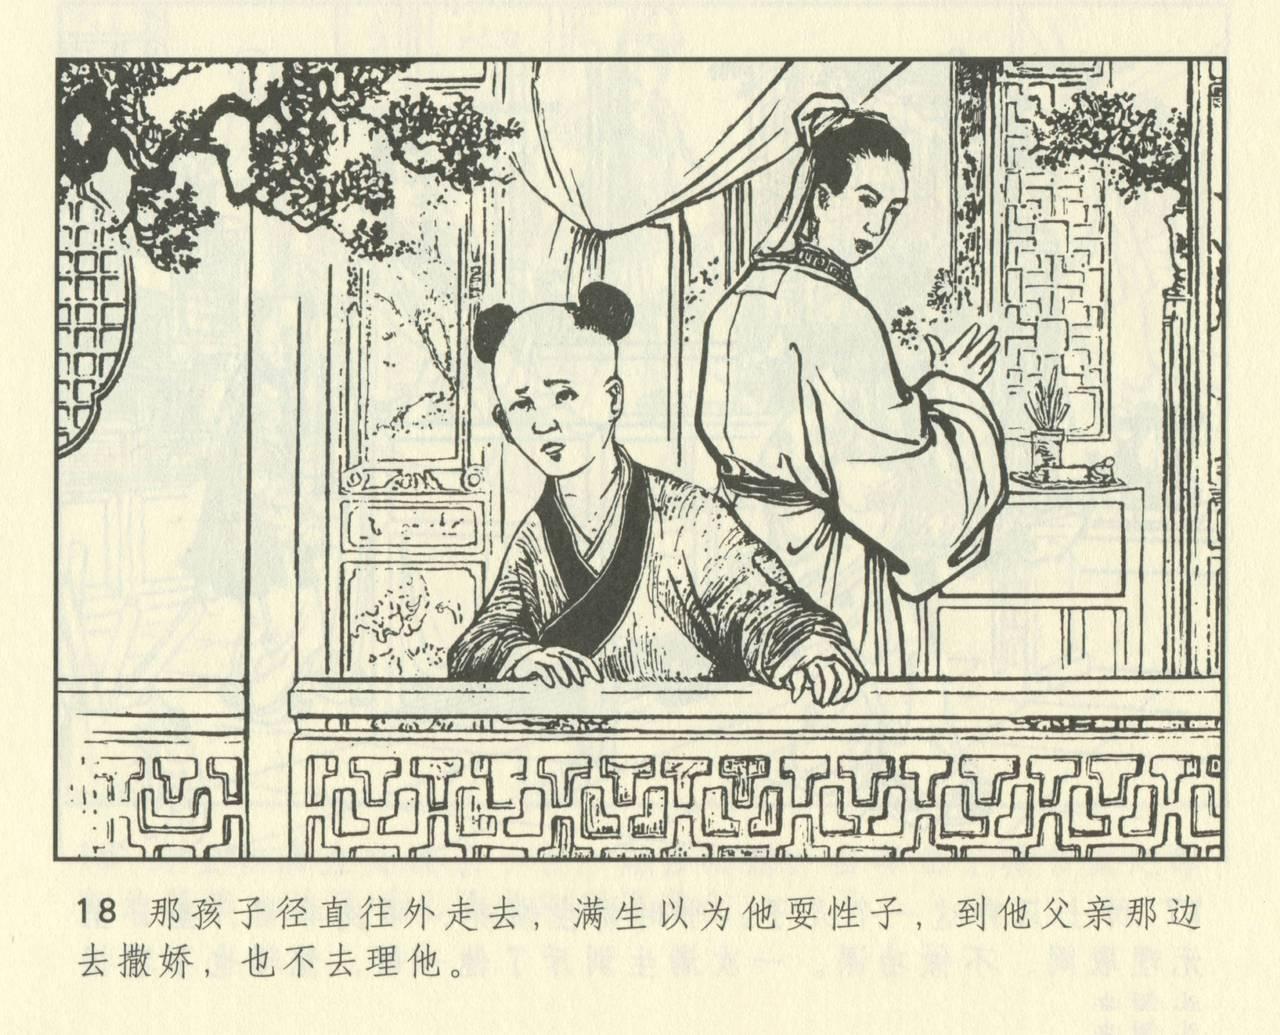 聊斋志异 张玮等绘 天津人民美术出版社 卷二十一 ~ 三十 429